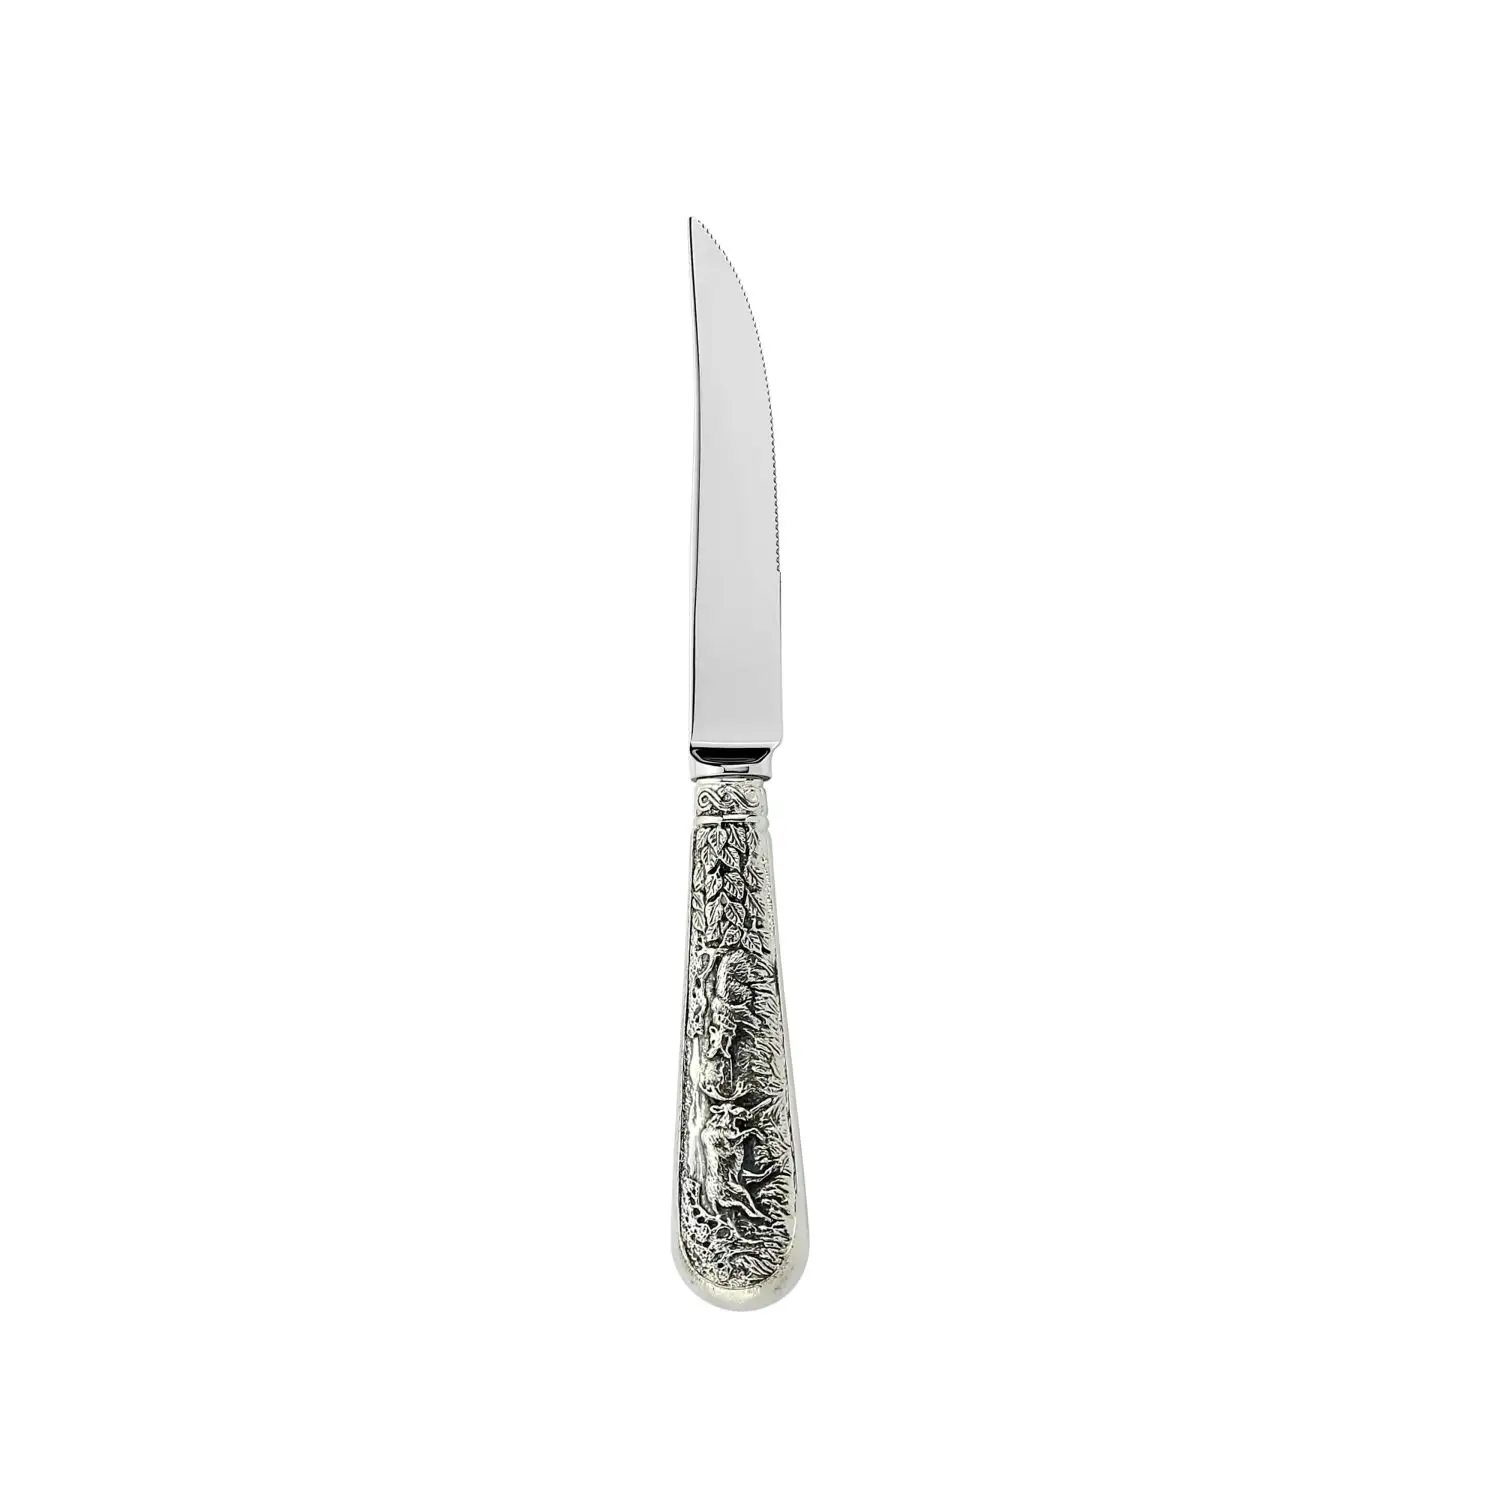 Нож для стейка с мелкими зубцами Лось посеребренный полированный с чернением нож д стейка лось посеребренный полиров с черн